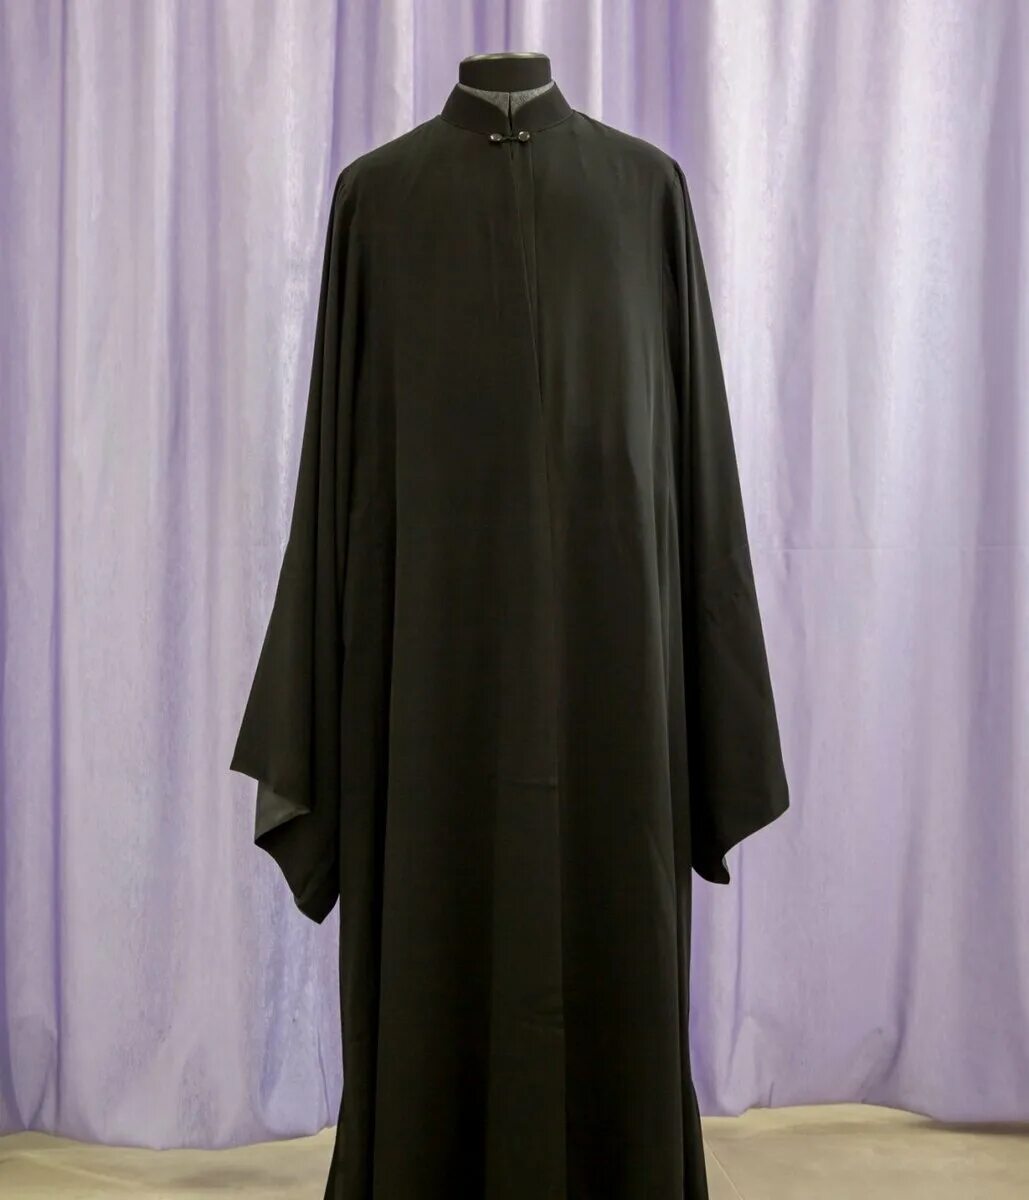 Платье священника. 19 Век ряса священника Католика. Ряса монашеская 19 век. Ряса сутана. Ряса монаха инока.